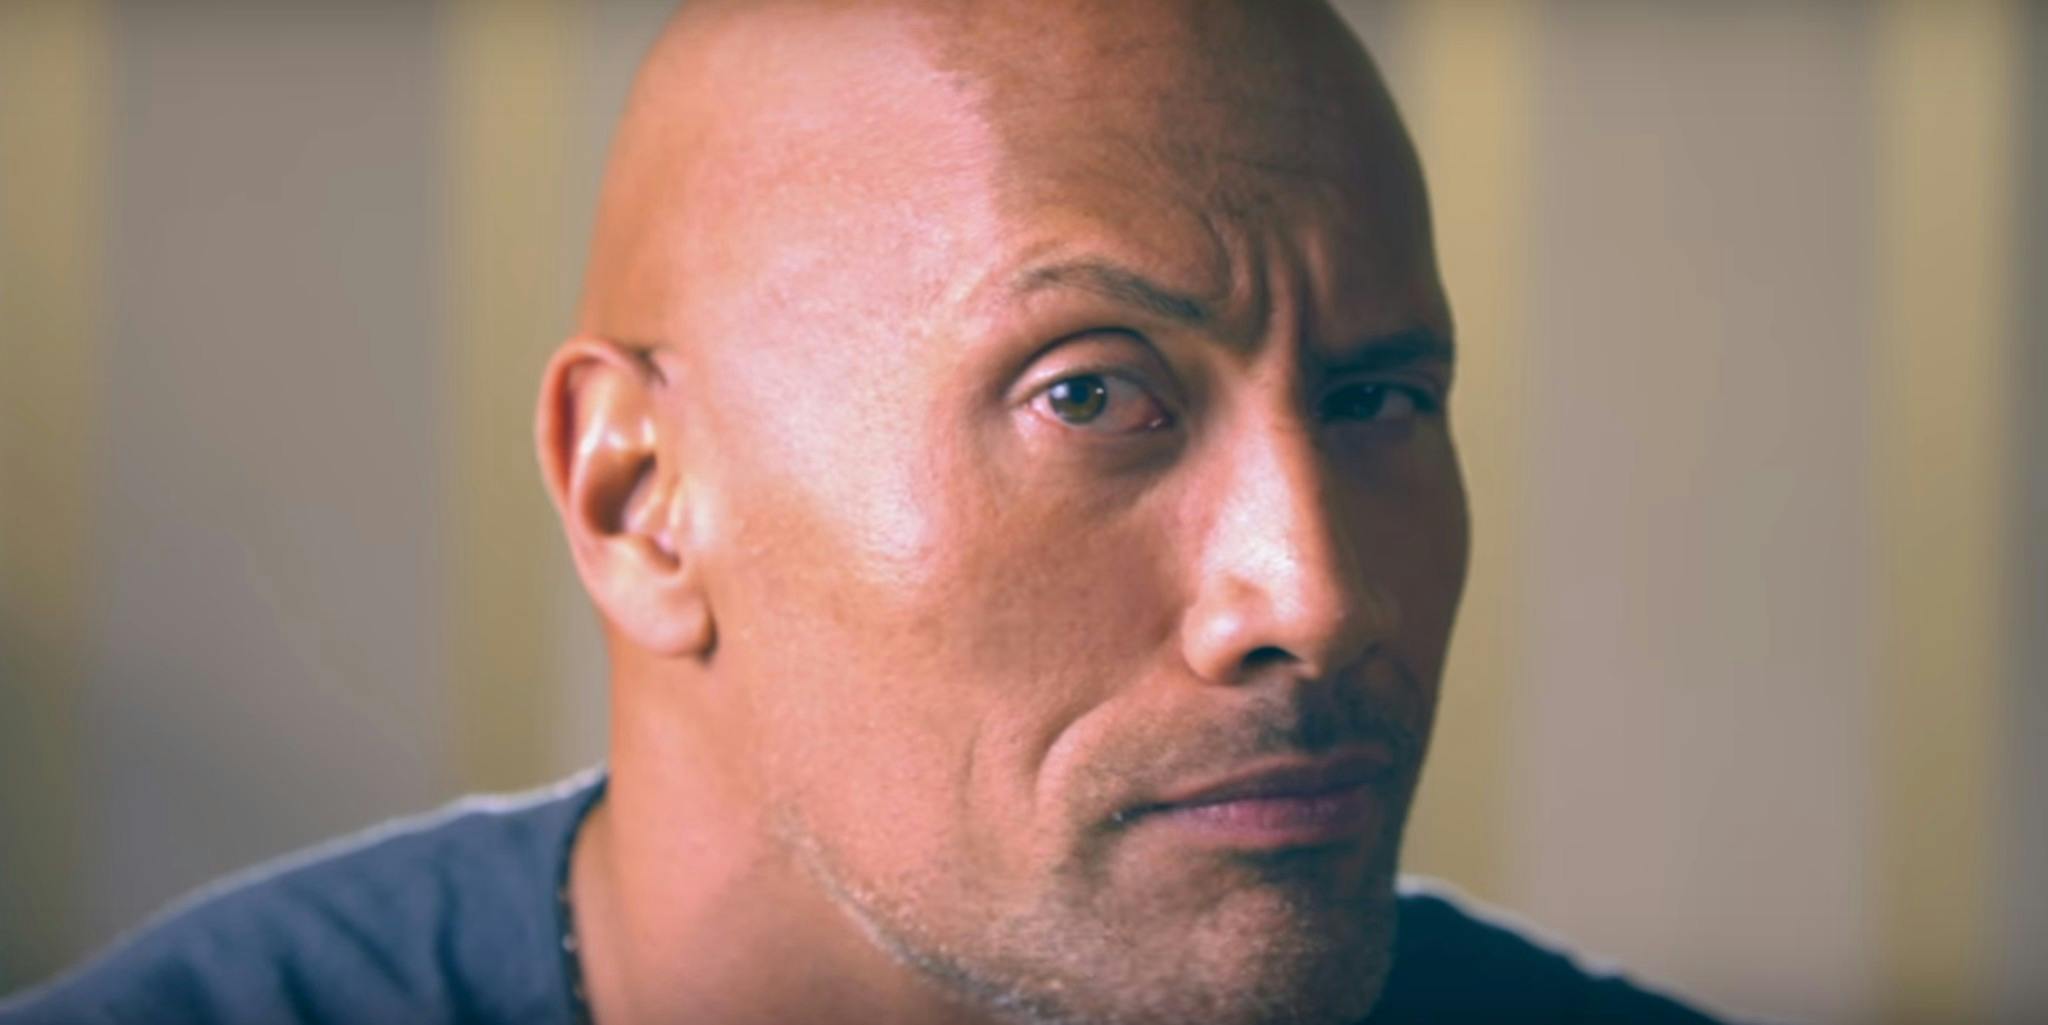 KREA - Vin Diesel doing the Rock raising eyebrow meme